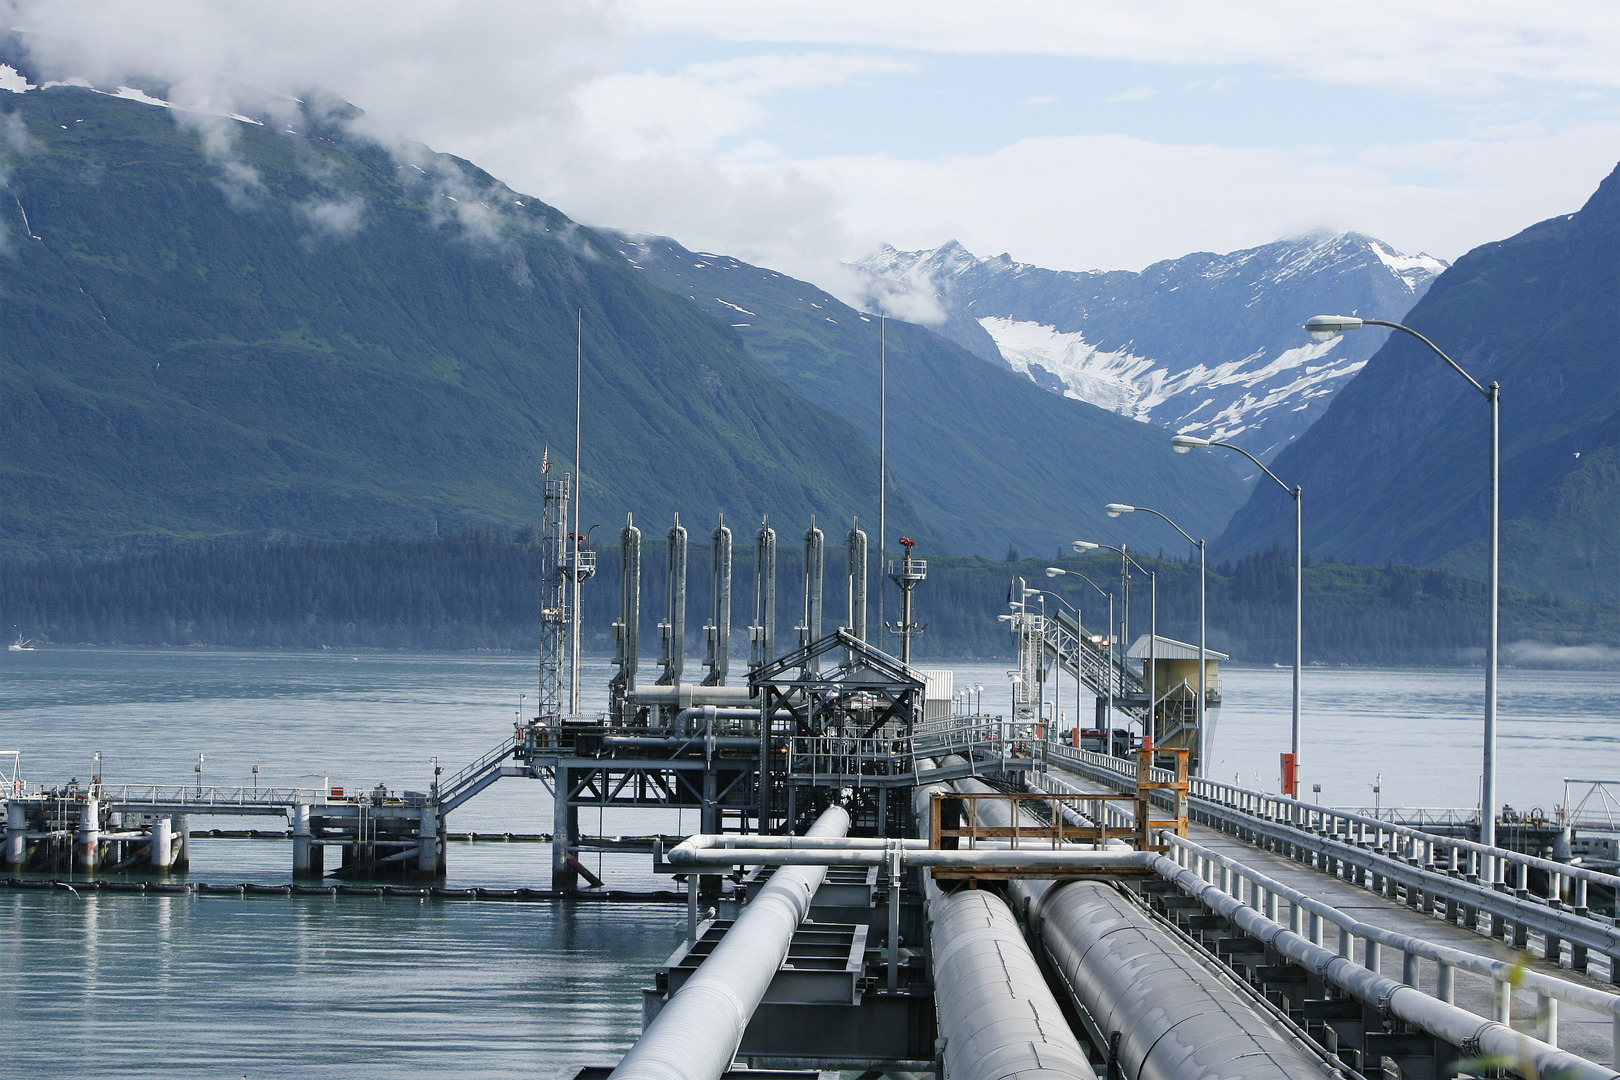 إدارة بايدن تراجع عقود إيجار النفط والغاز في محمية ألاسكا البرية